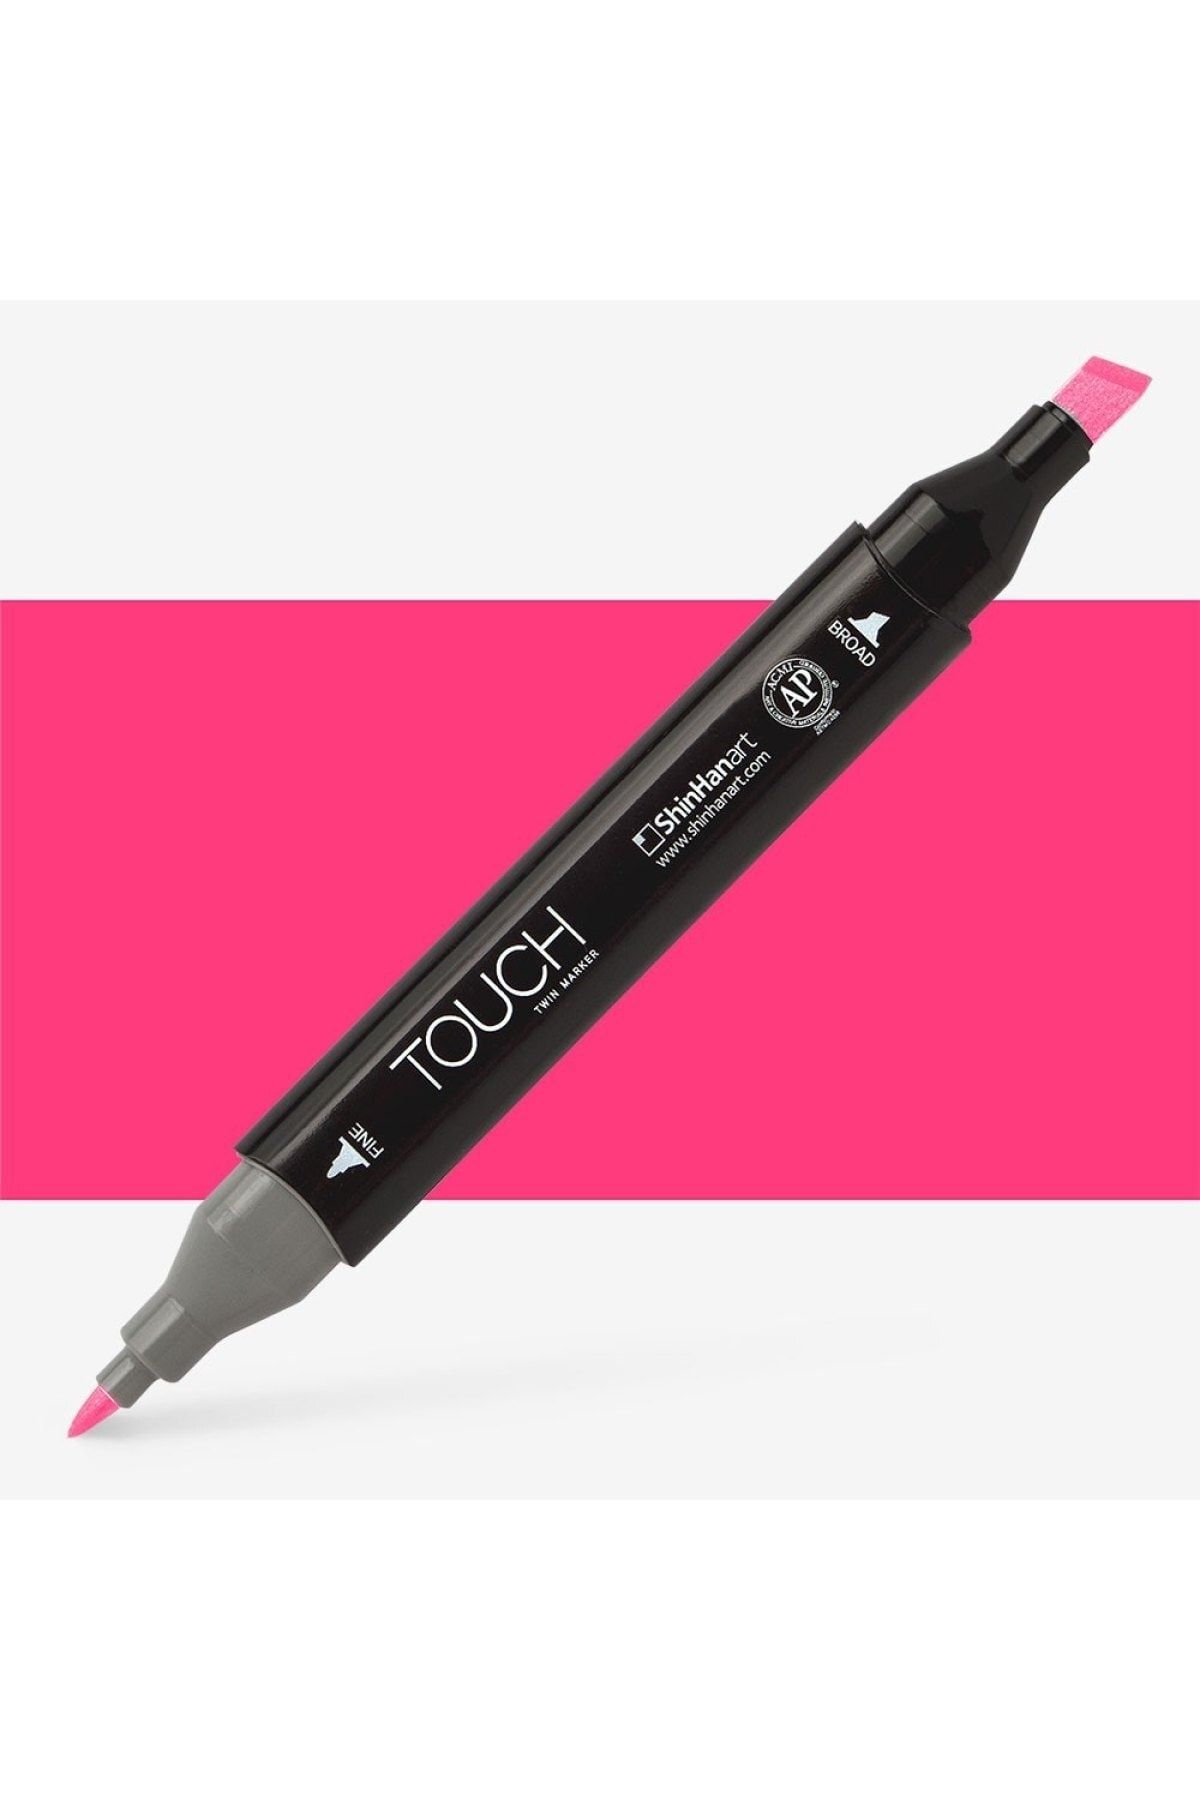 Shinhan Art Touch Twin Marker Pen : Çift Uçlu Marker Kalemi : Prımary Magenta : Rp291